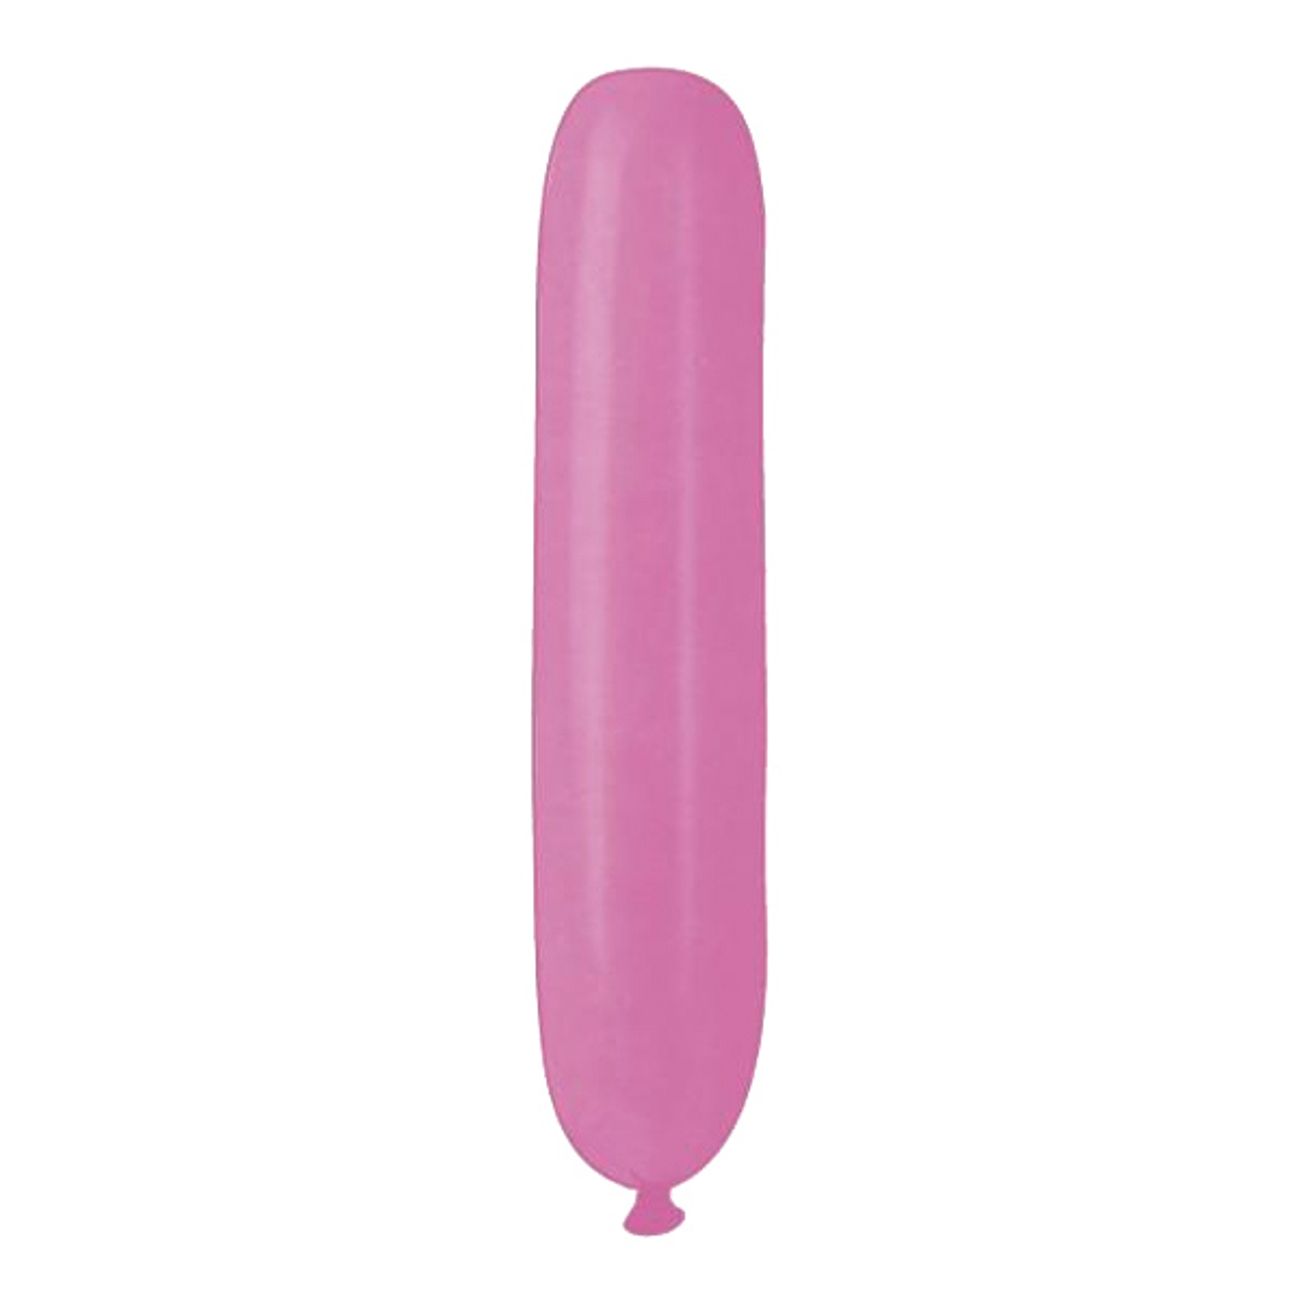 ballonger-avlanga-rosa-1